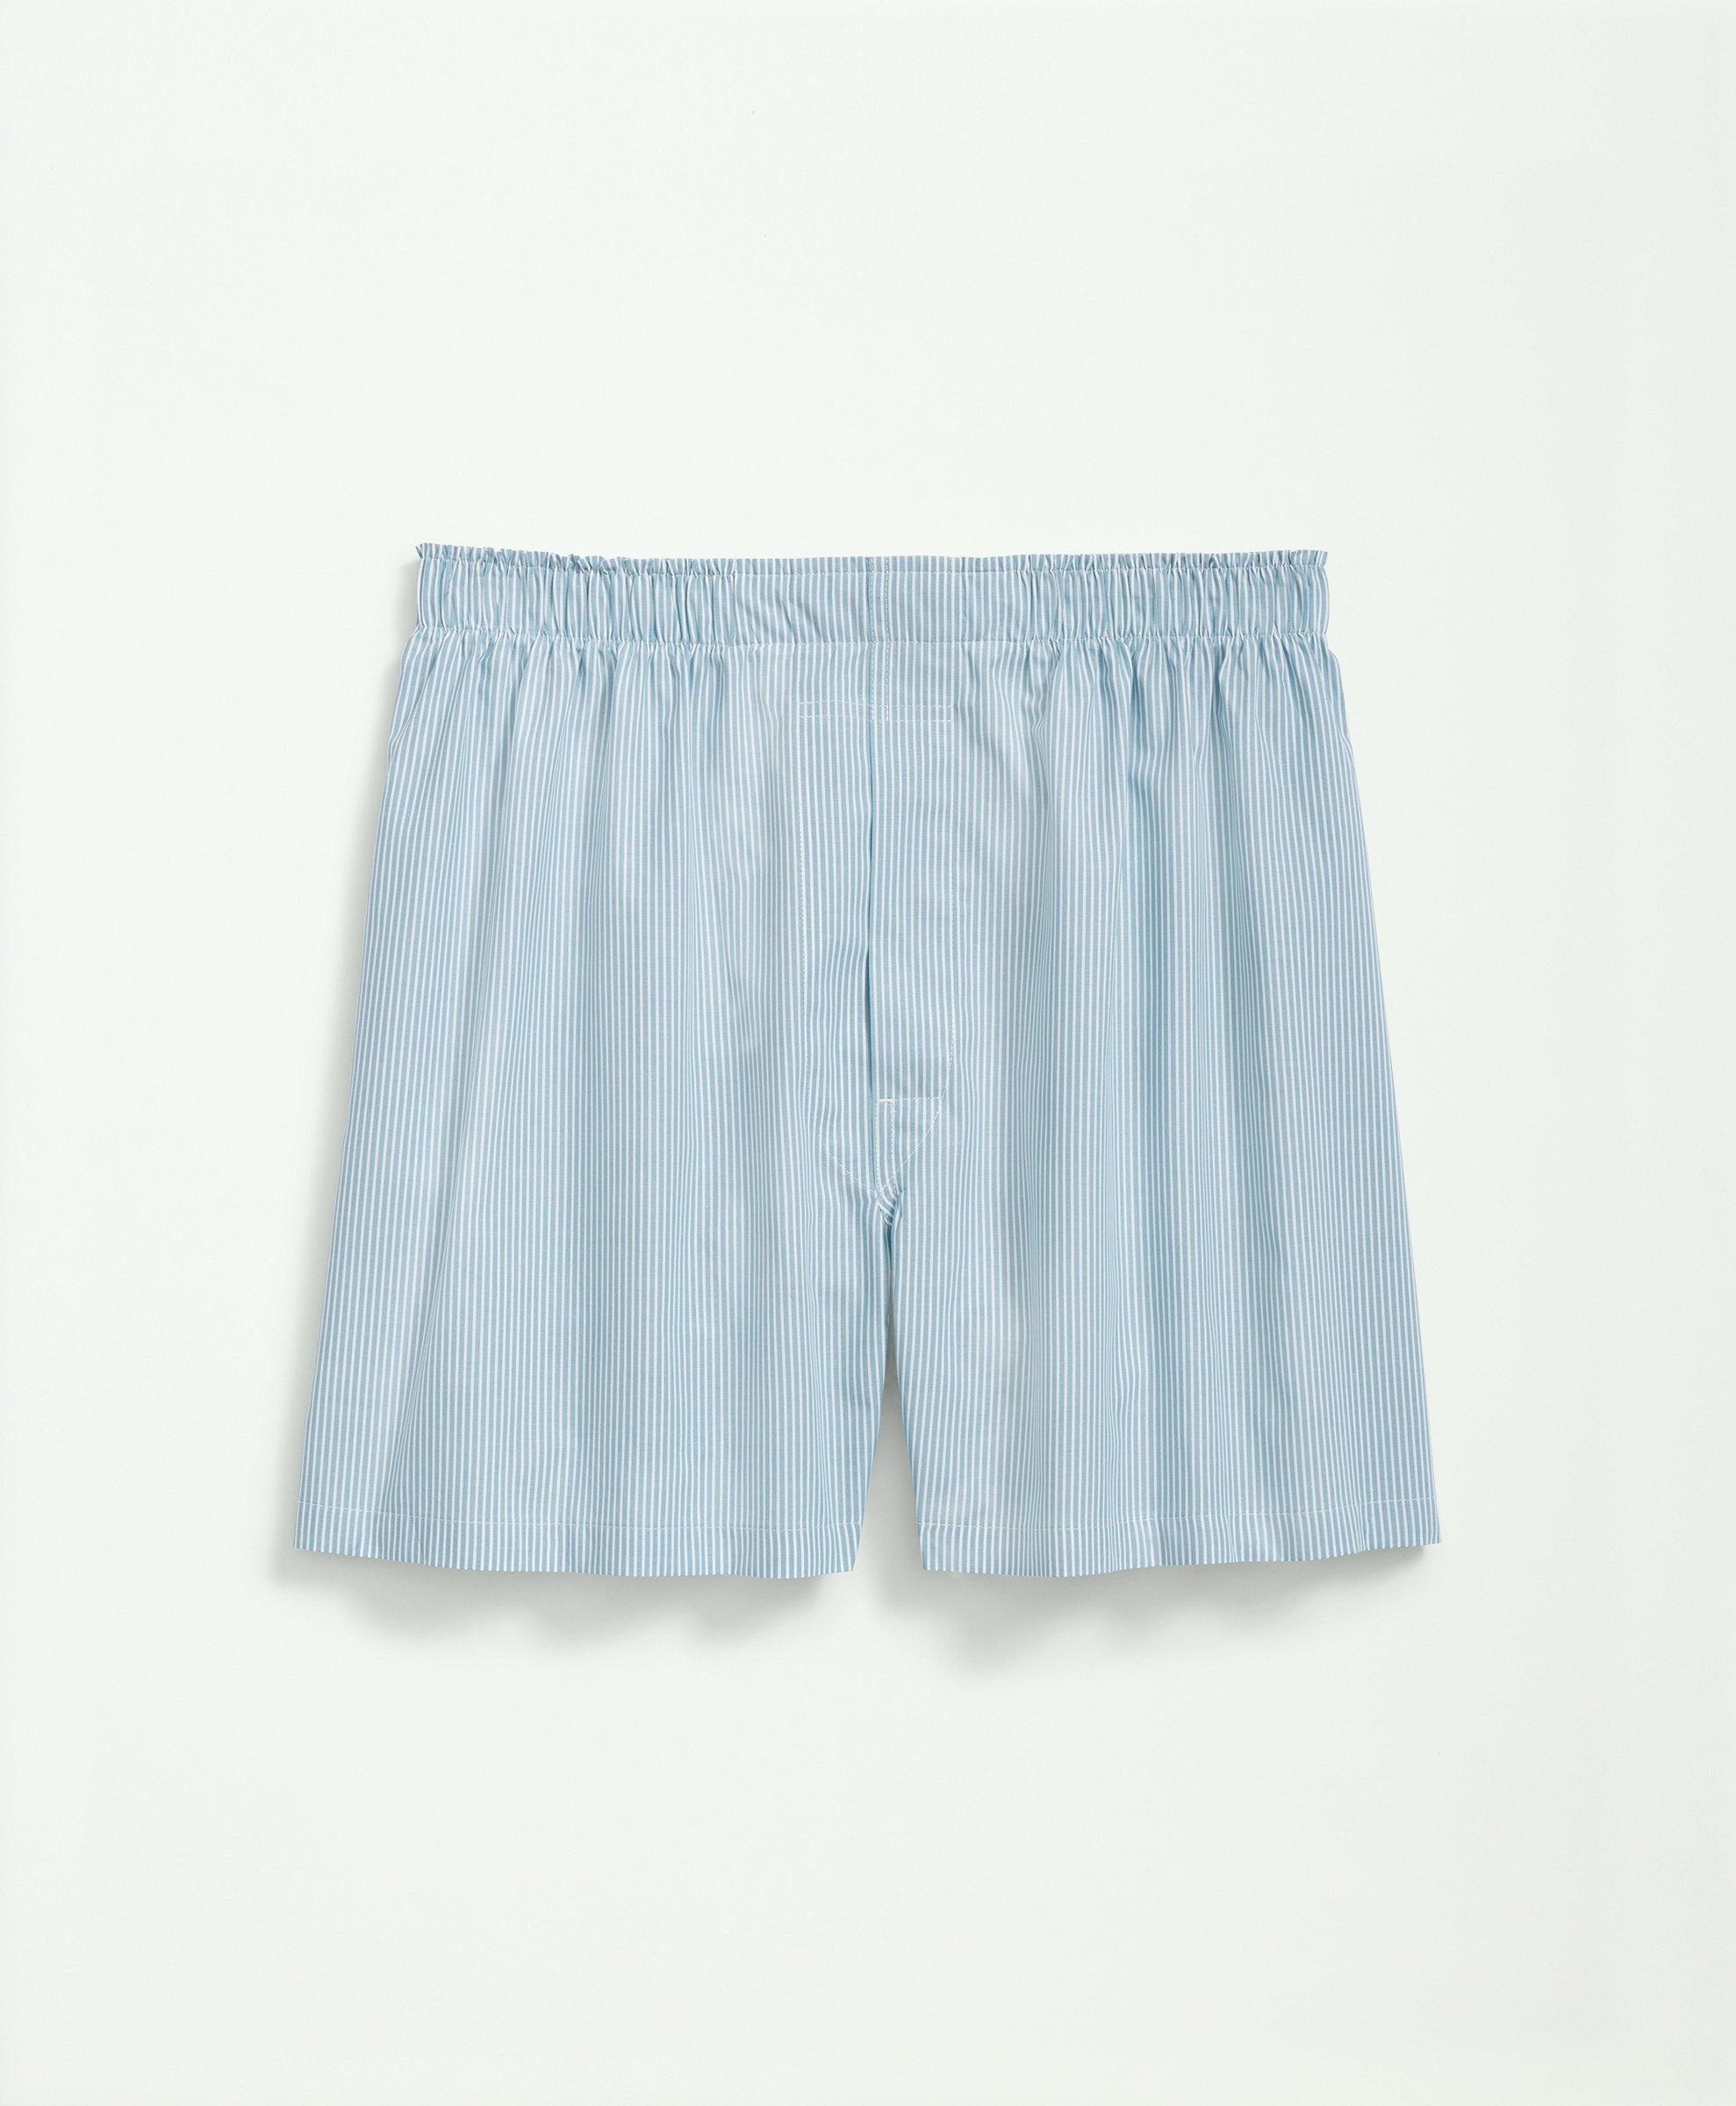 Plain Cotton Girls Printed Boxer Shorts, Packaging Type: P.p Bag